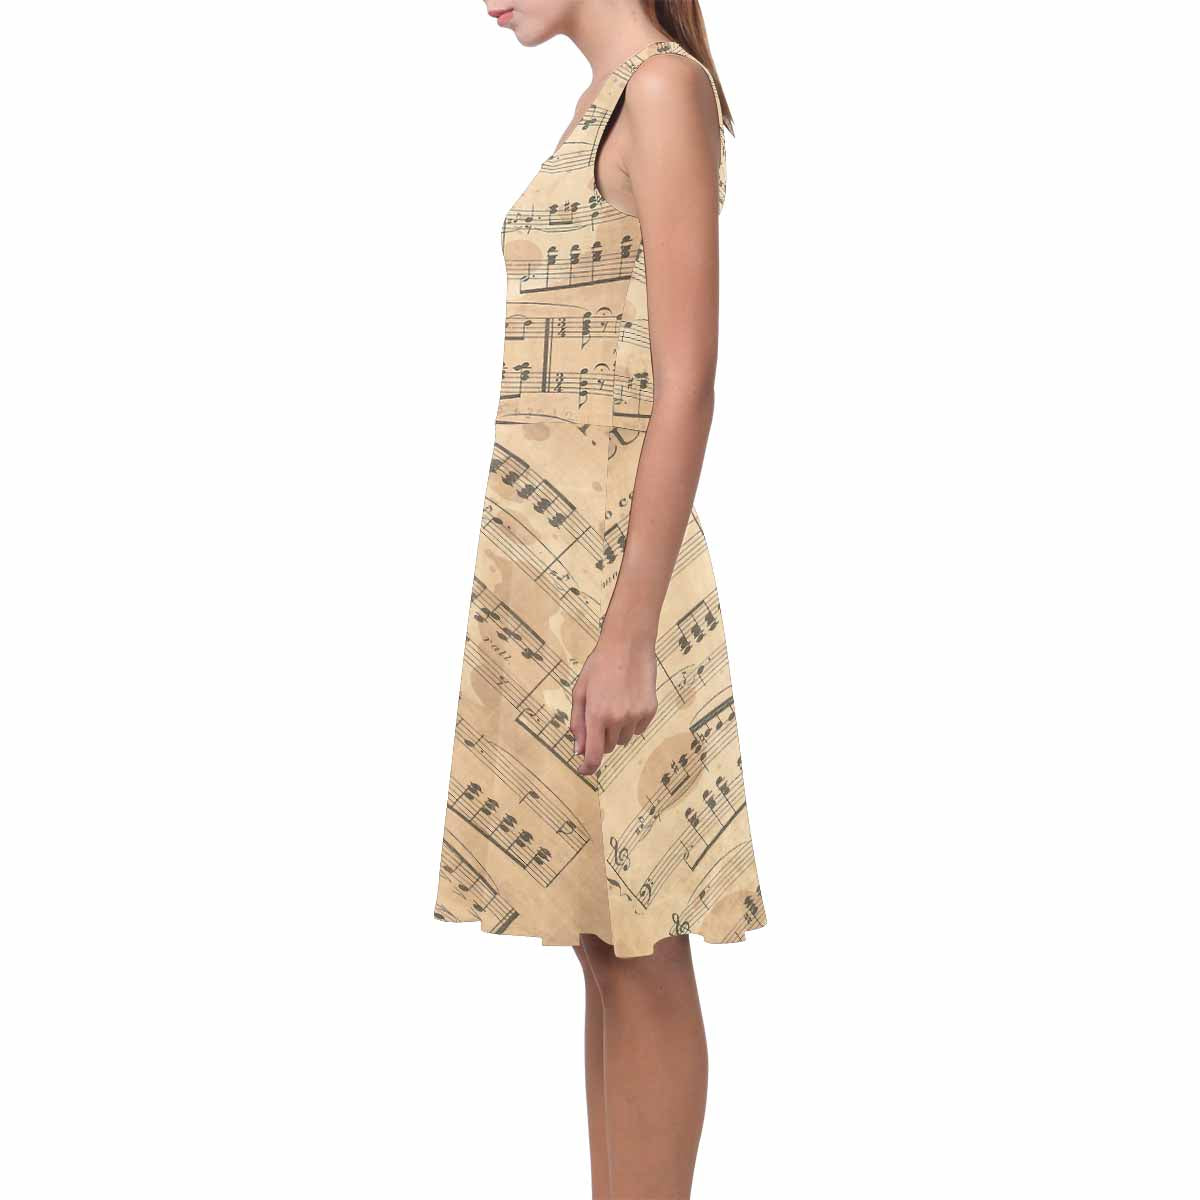 Antique General summer dress, MODEL 09534, design 55